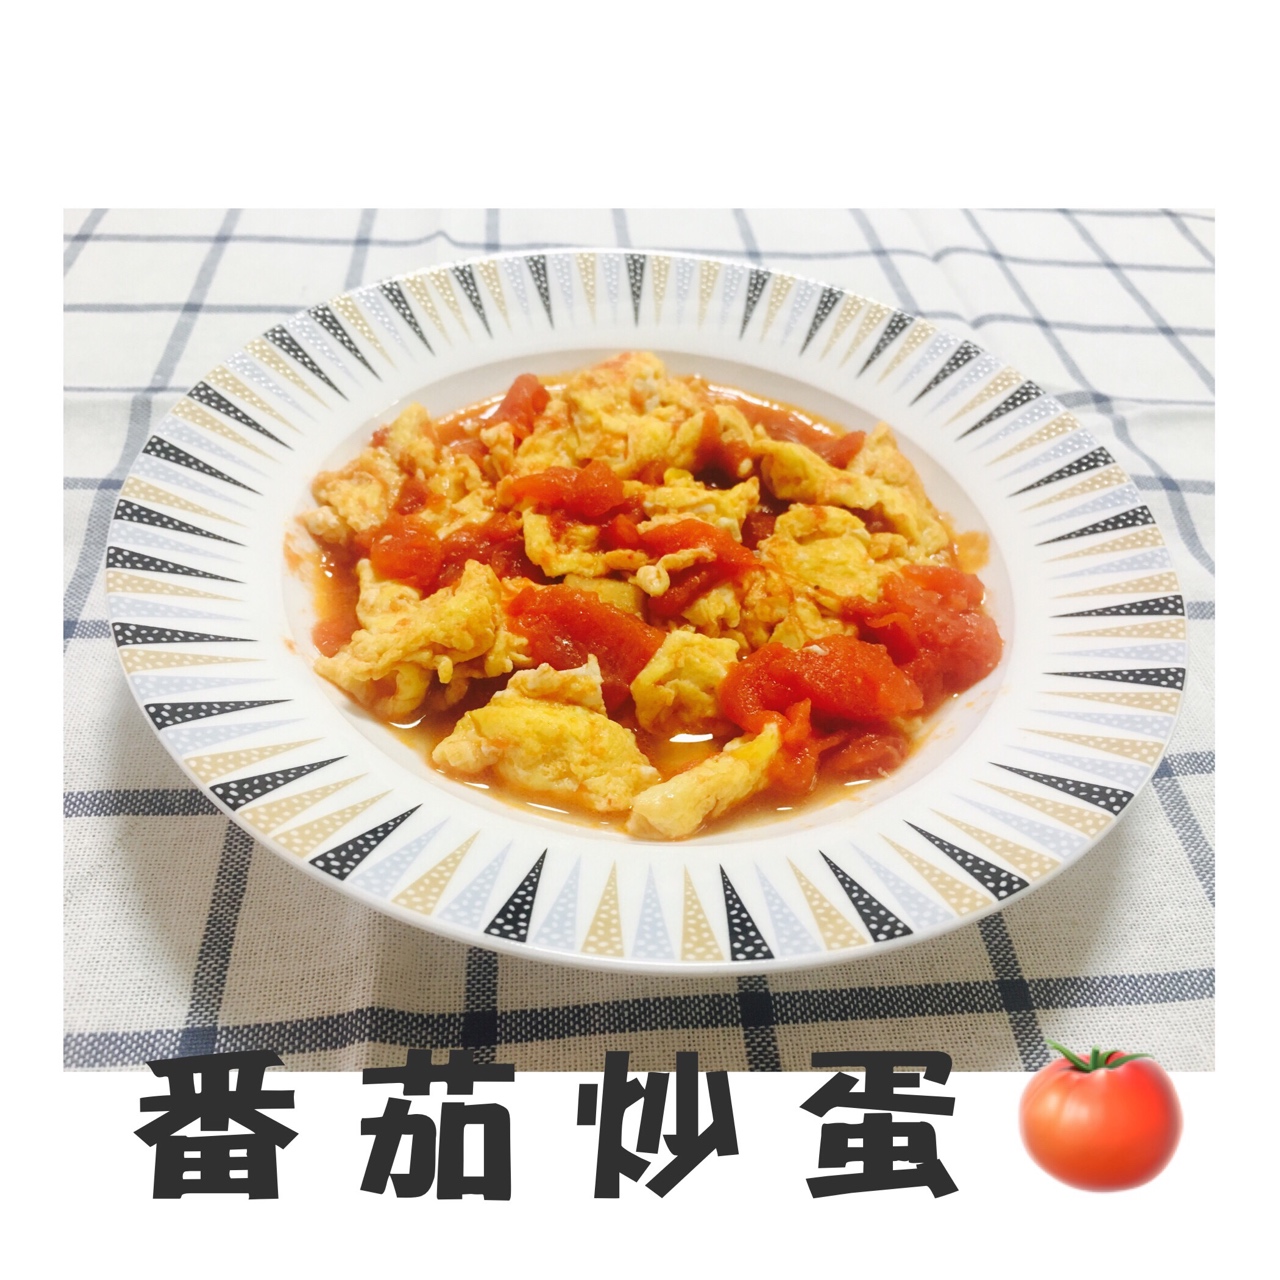 「中餐厅 大厨定制」赛螃蟹炒番茄